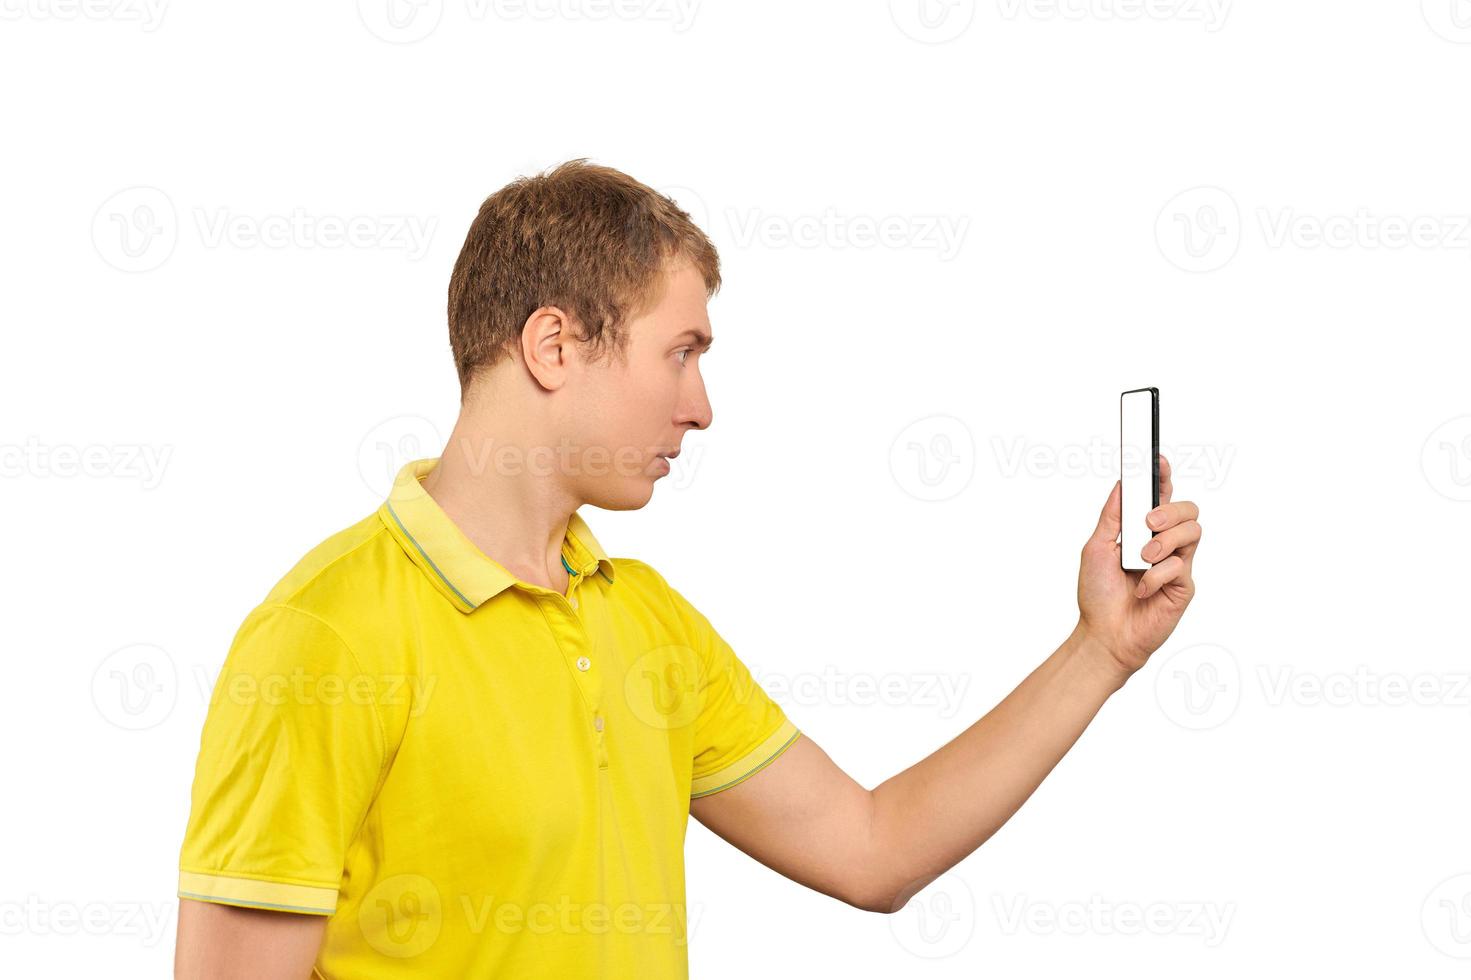 cara engraçado em camiseta amarela tirando fotos usando smartphone, cara com celular, maquete branca